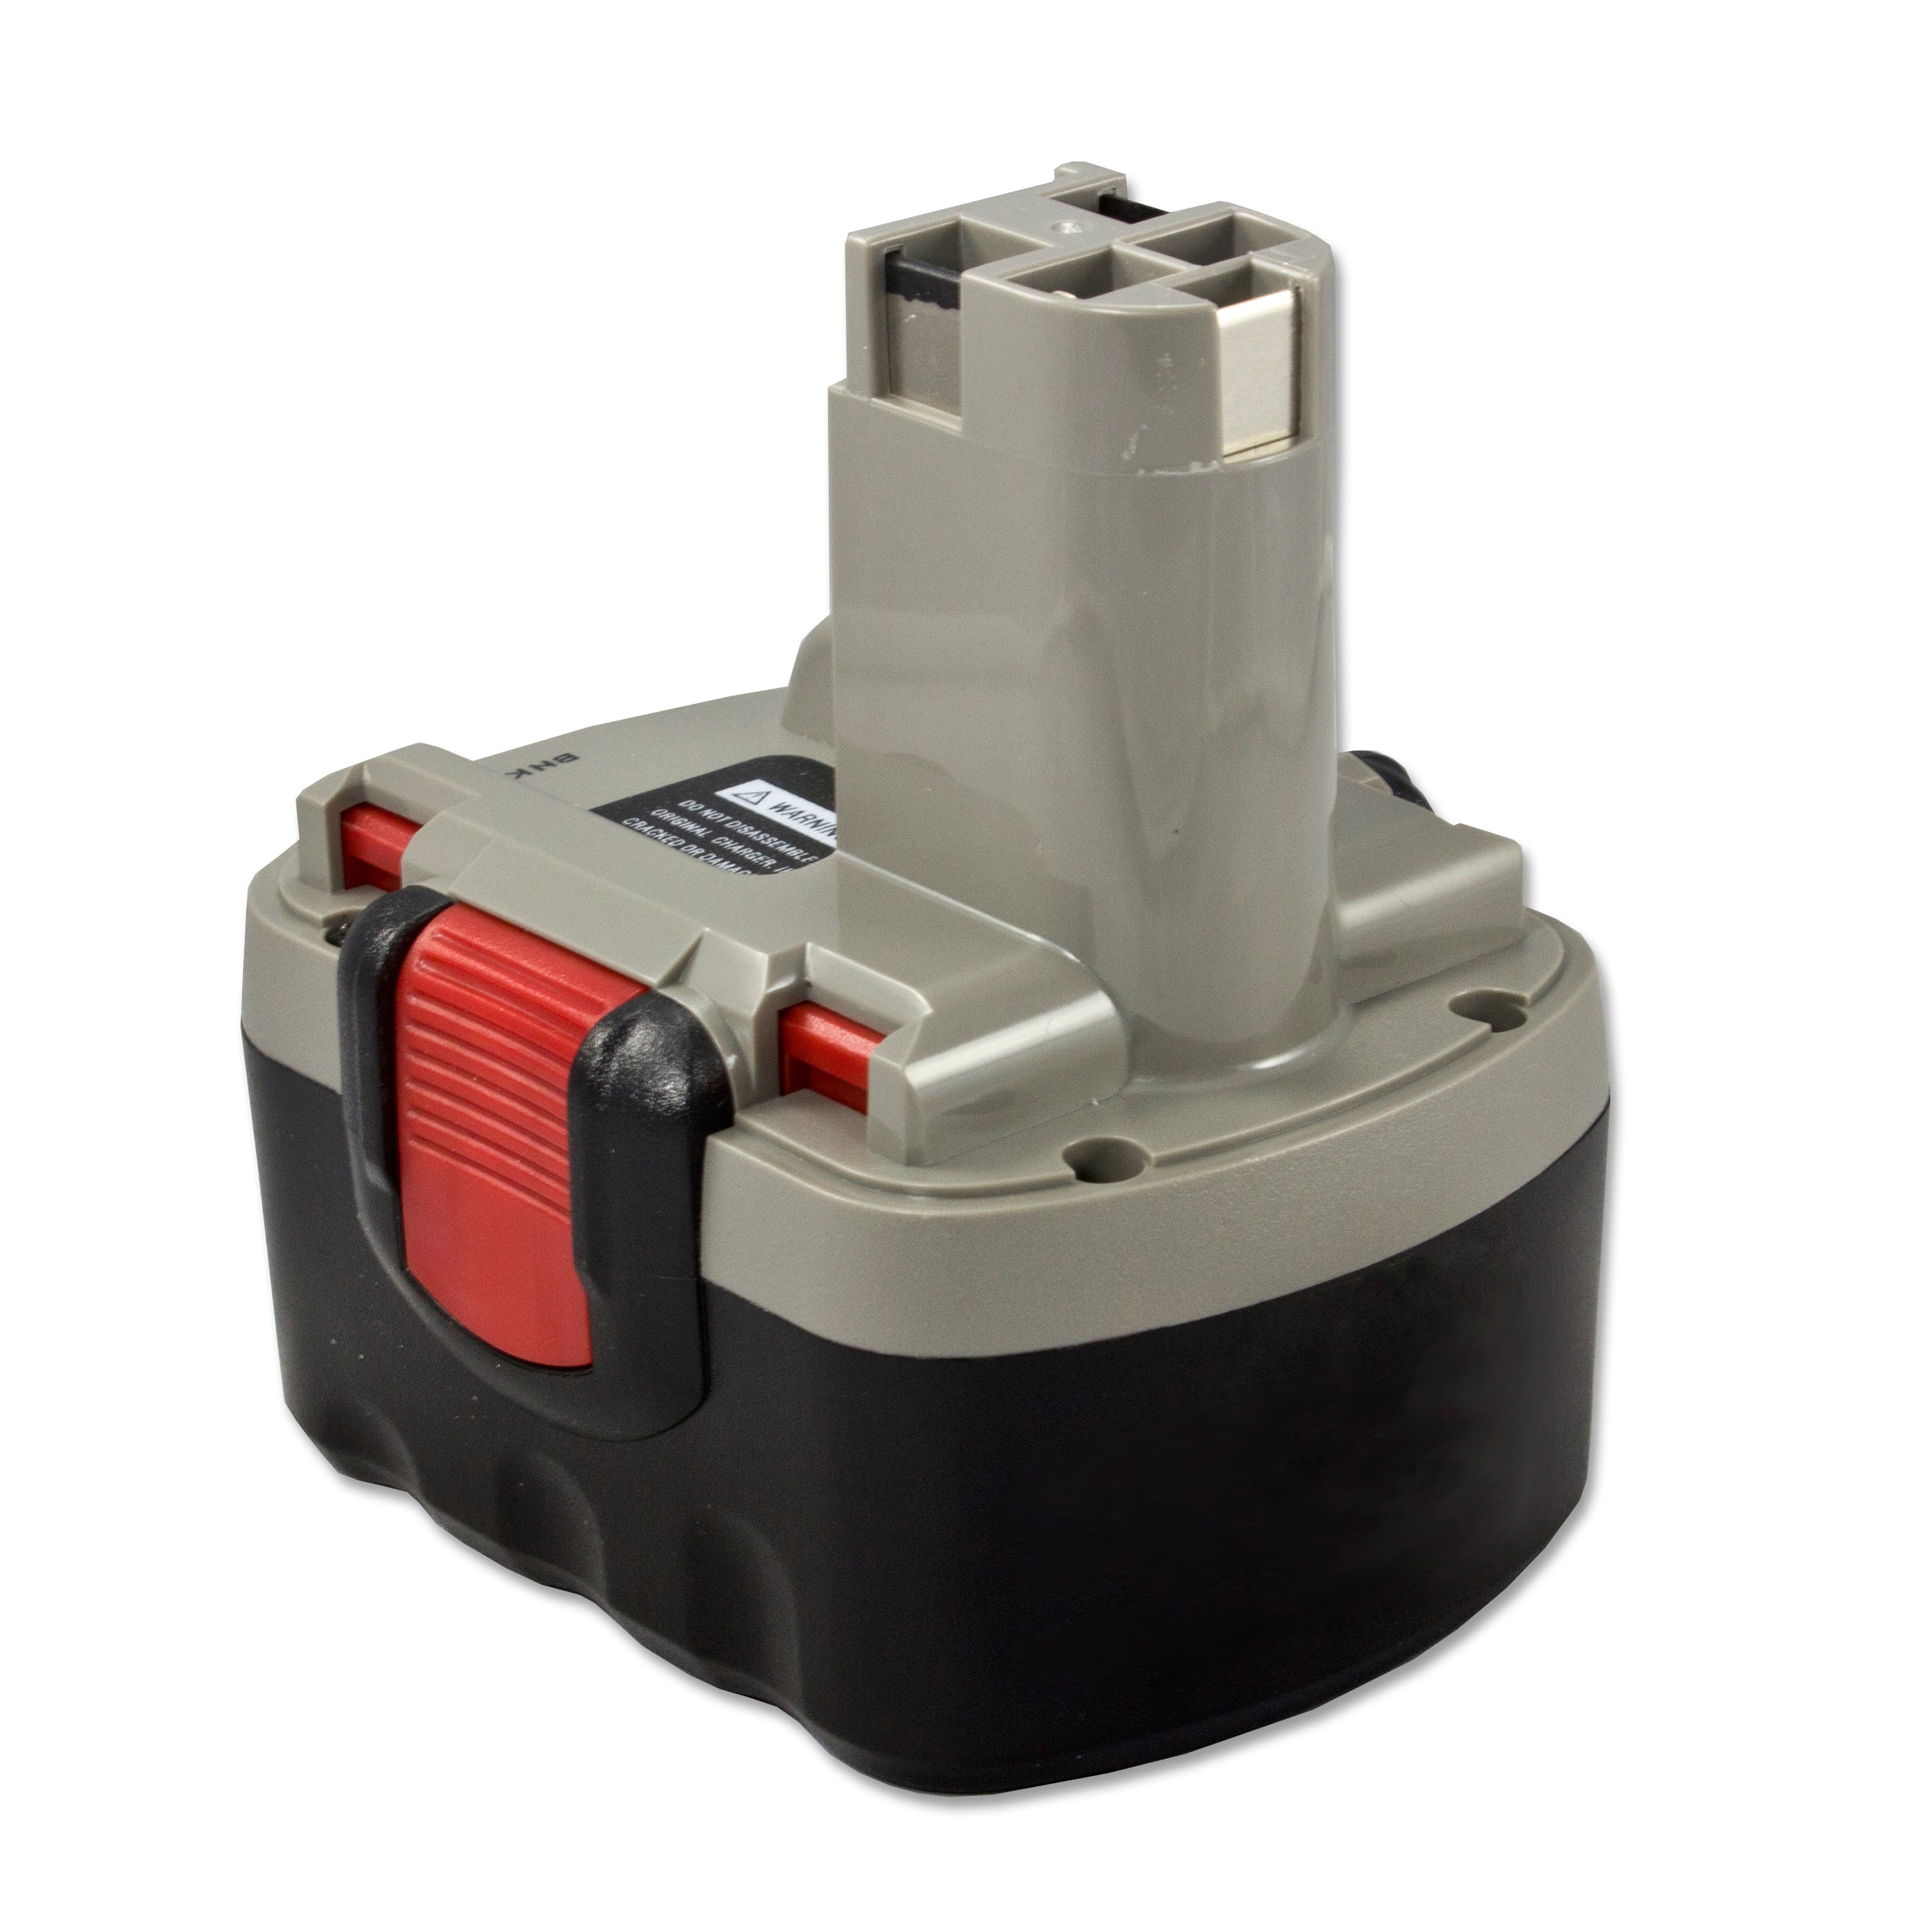 Bosch PSR 14.4 VE-2 produits - BatteryUpgrade